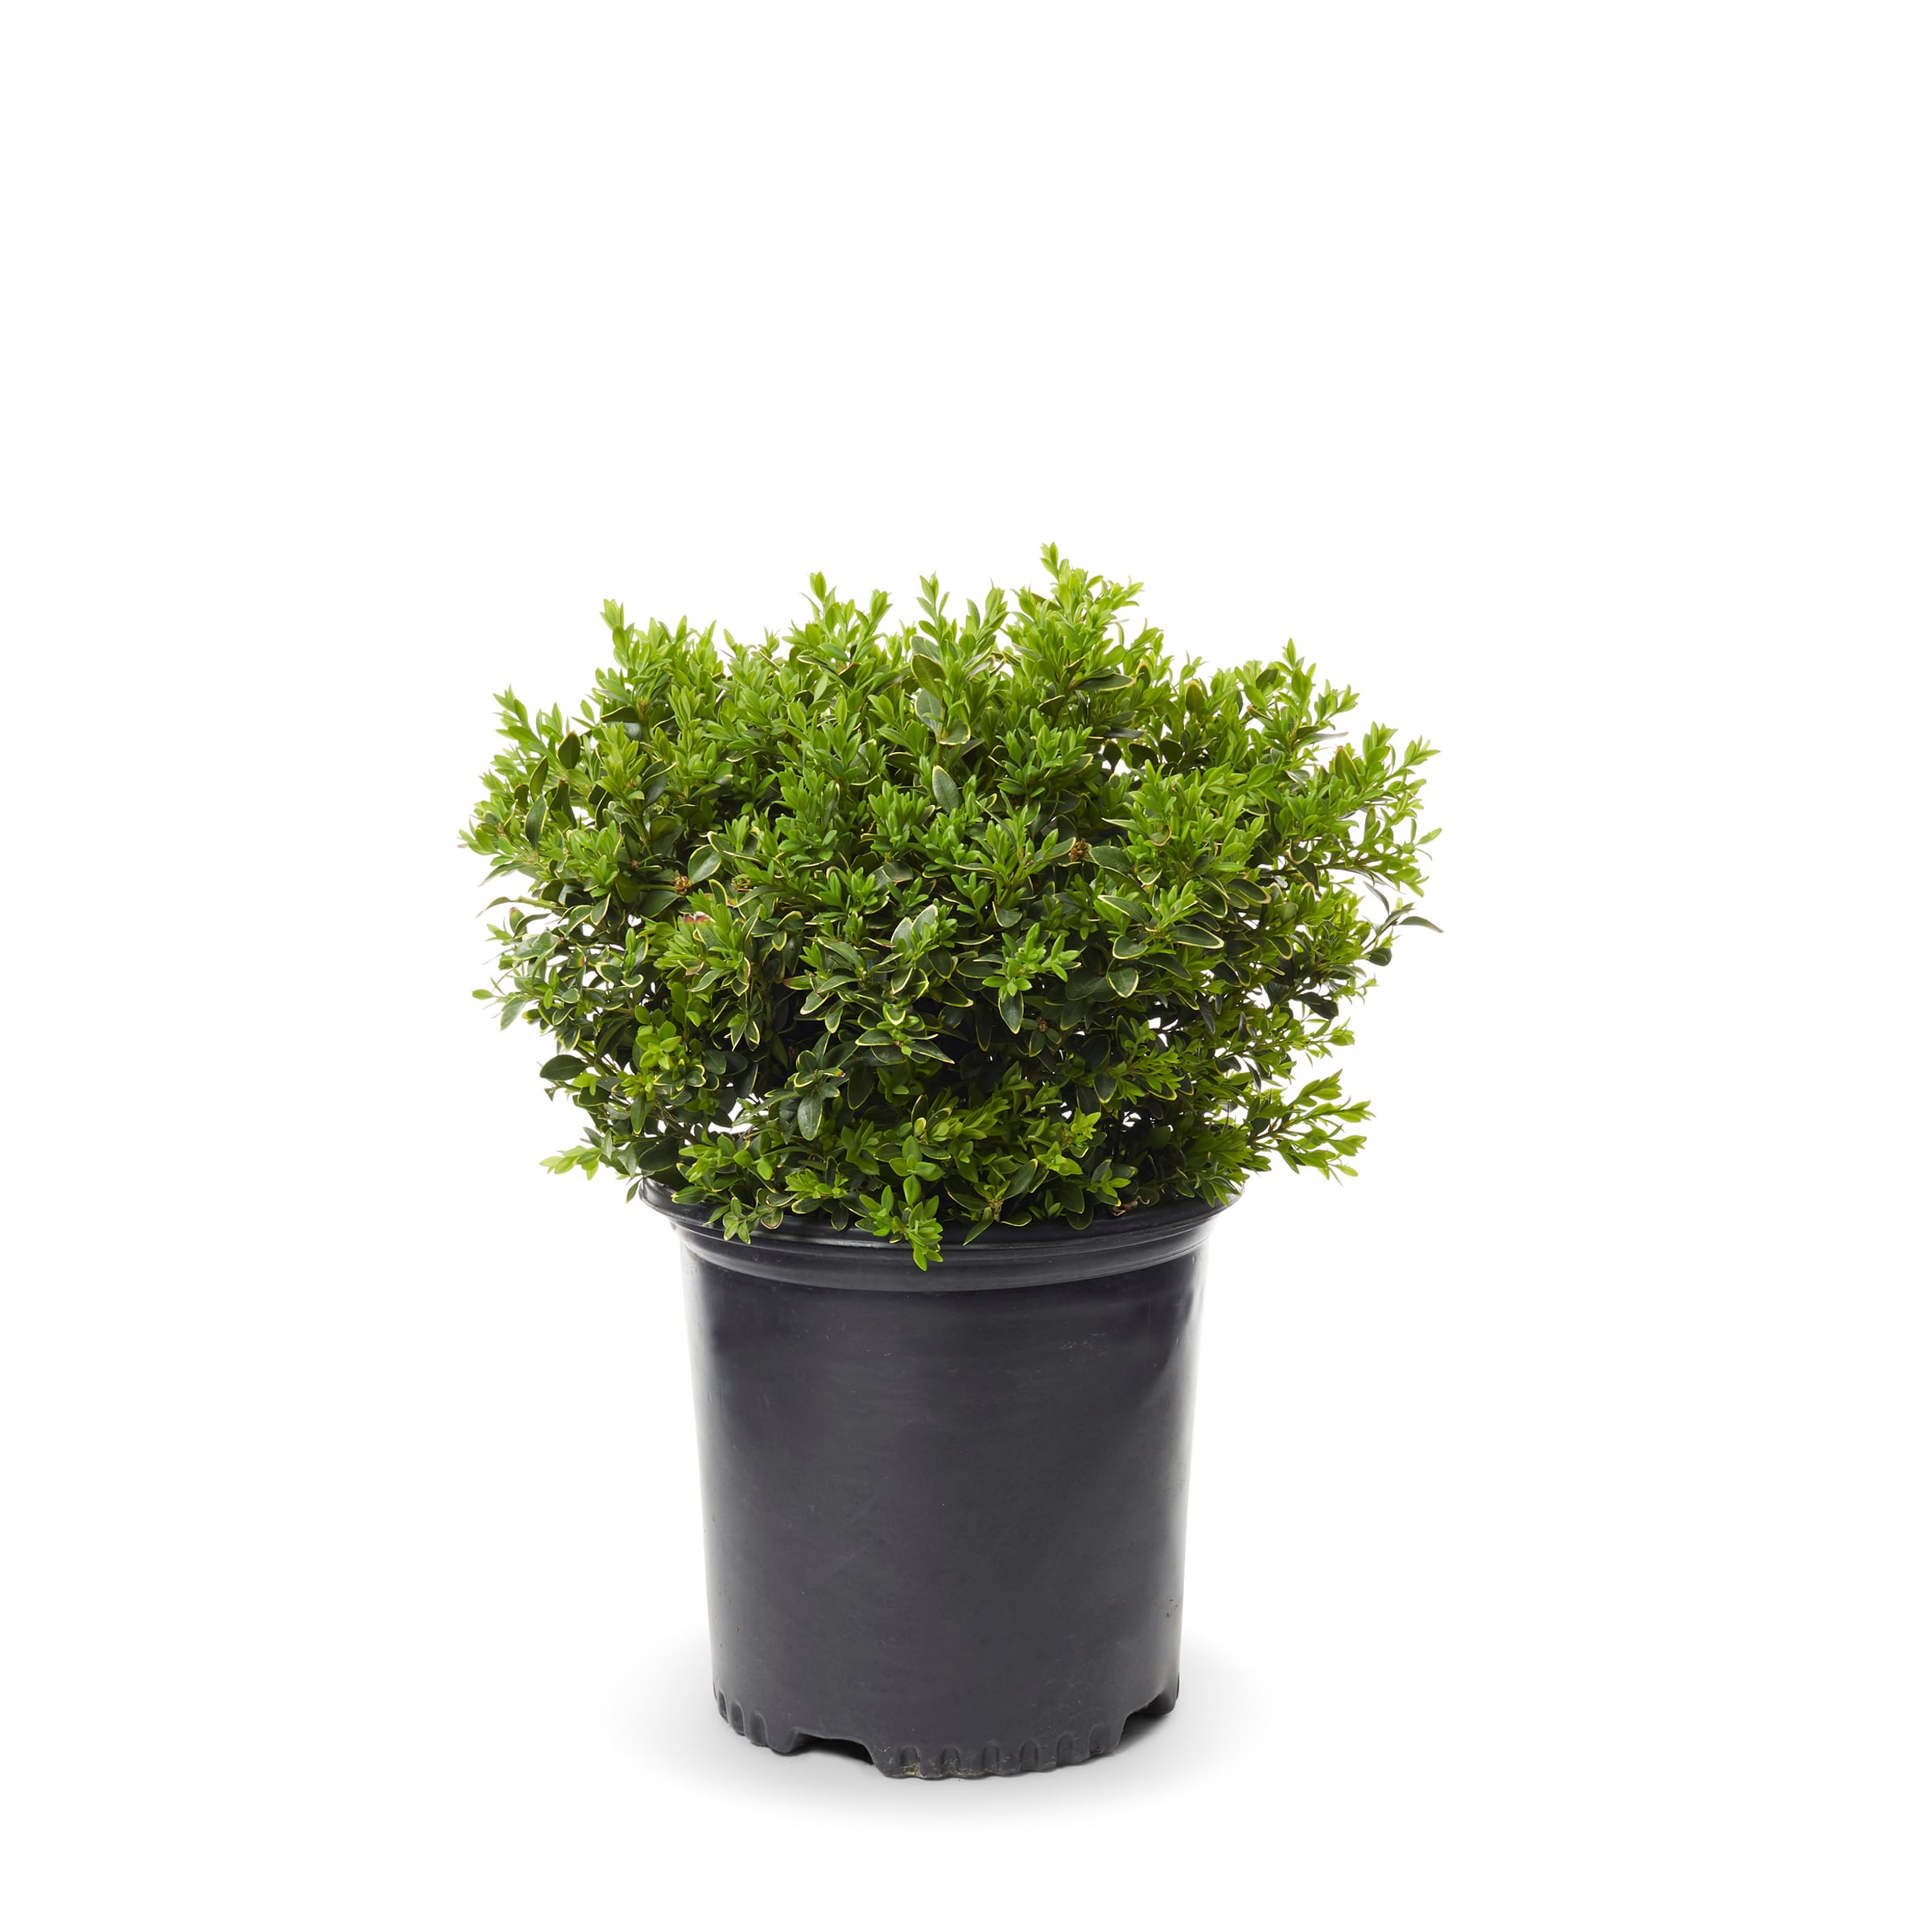 Lowe's White Green Velvet Boxwood Foundation/Hedge Shrub in 1.5-Gallon (s)  Pot in the Shrubs department at